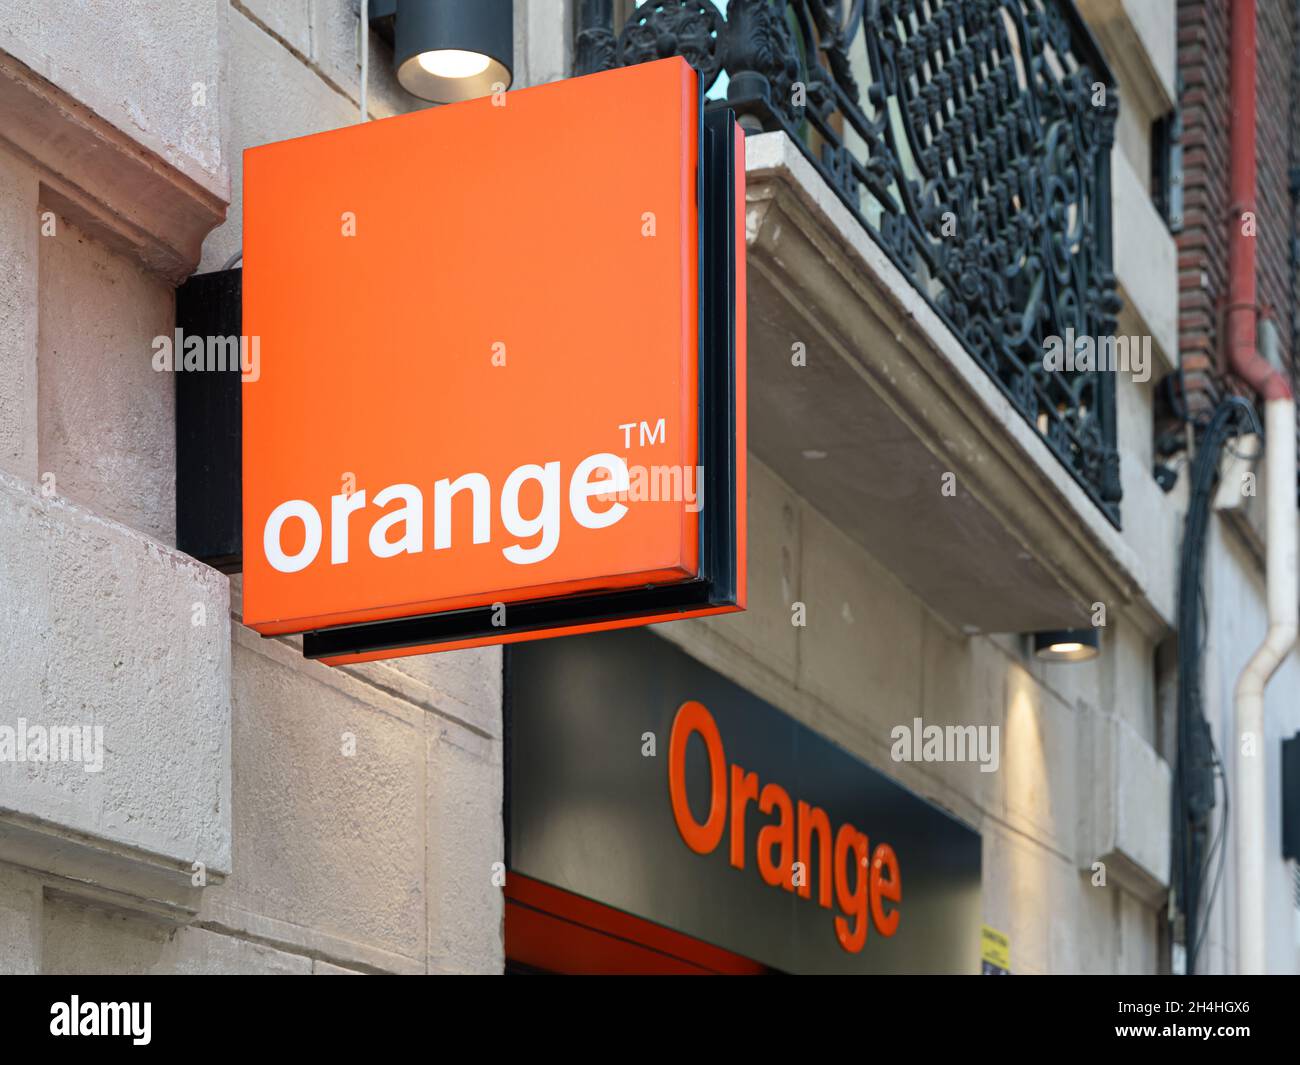 VALENCE, ESPAGNE - 26 OCTOBRE 2021: Orange est une multinationale française de télécommunications Banque D'Images